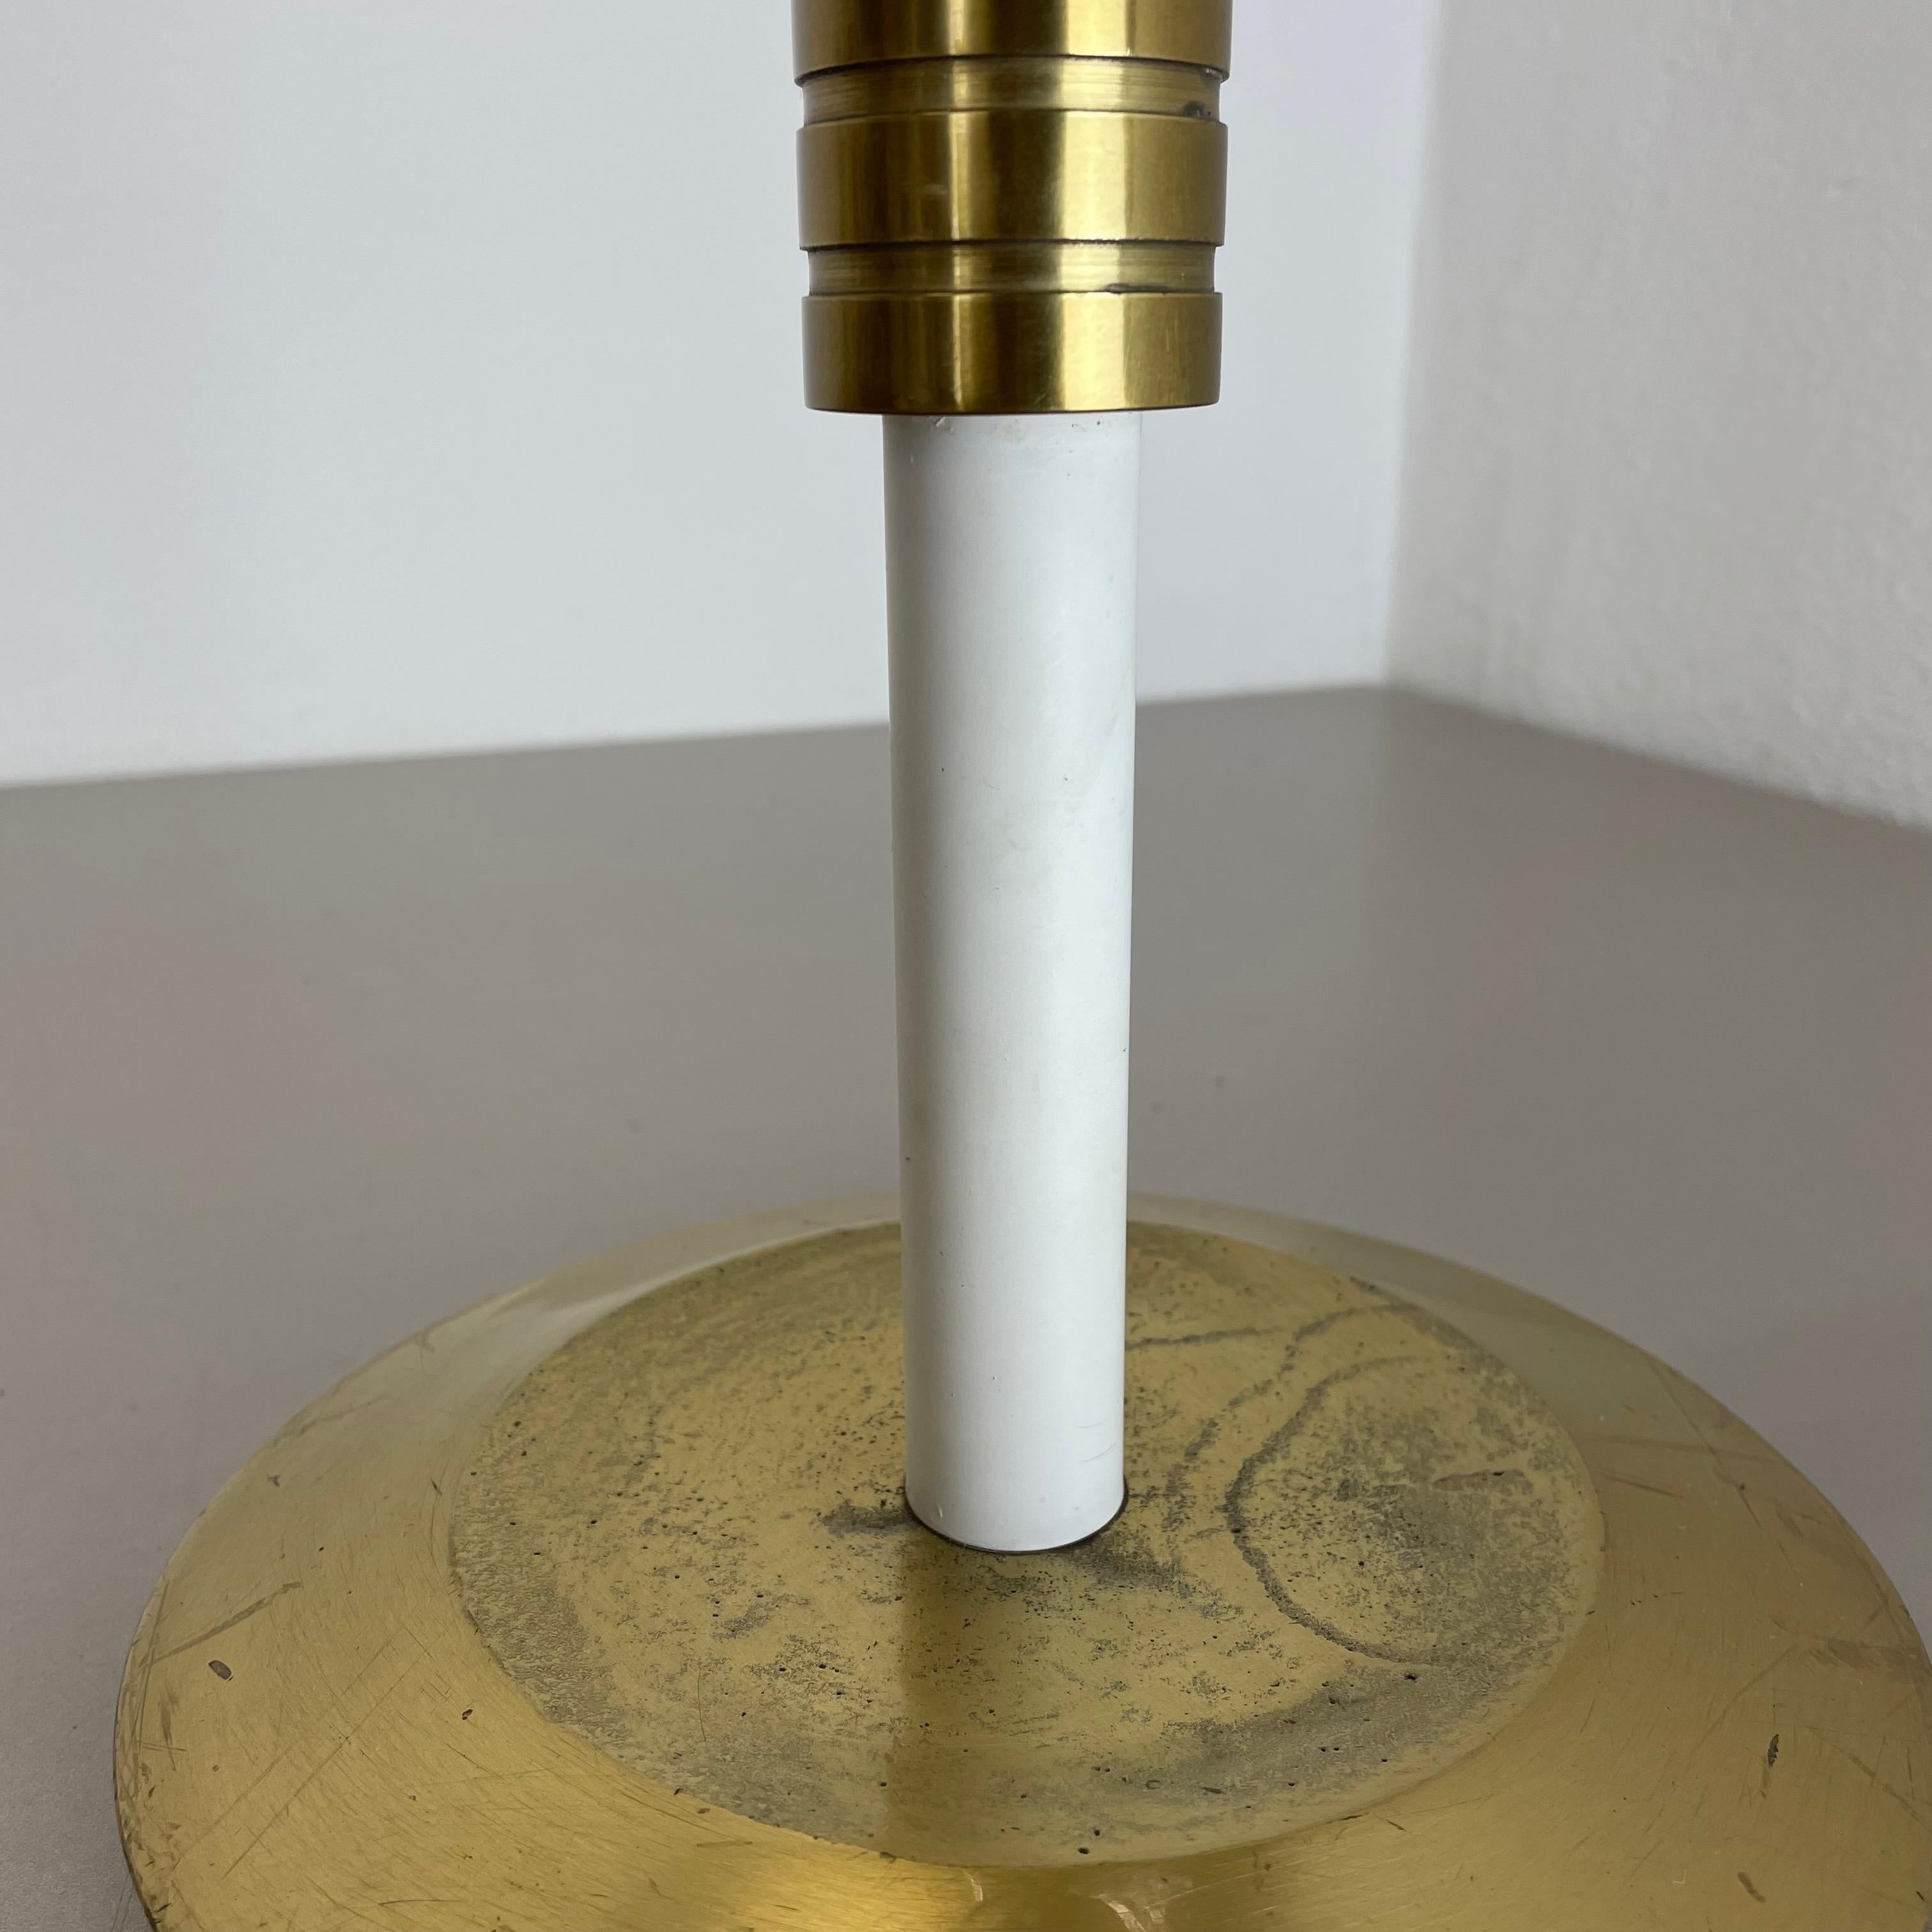 XL 3, 8kg Modernist Sculptural Brutalist Brass Floor Candleholder, Italy, 1950s For Sale 1